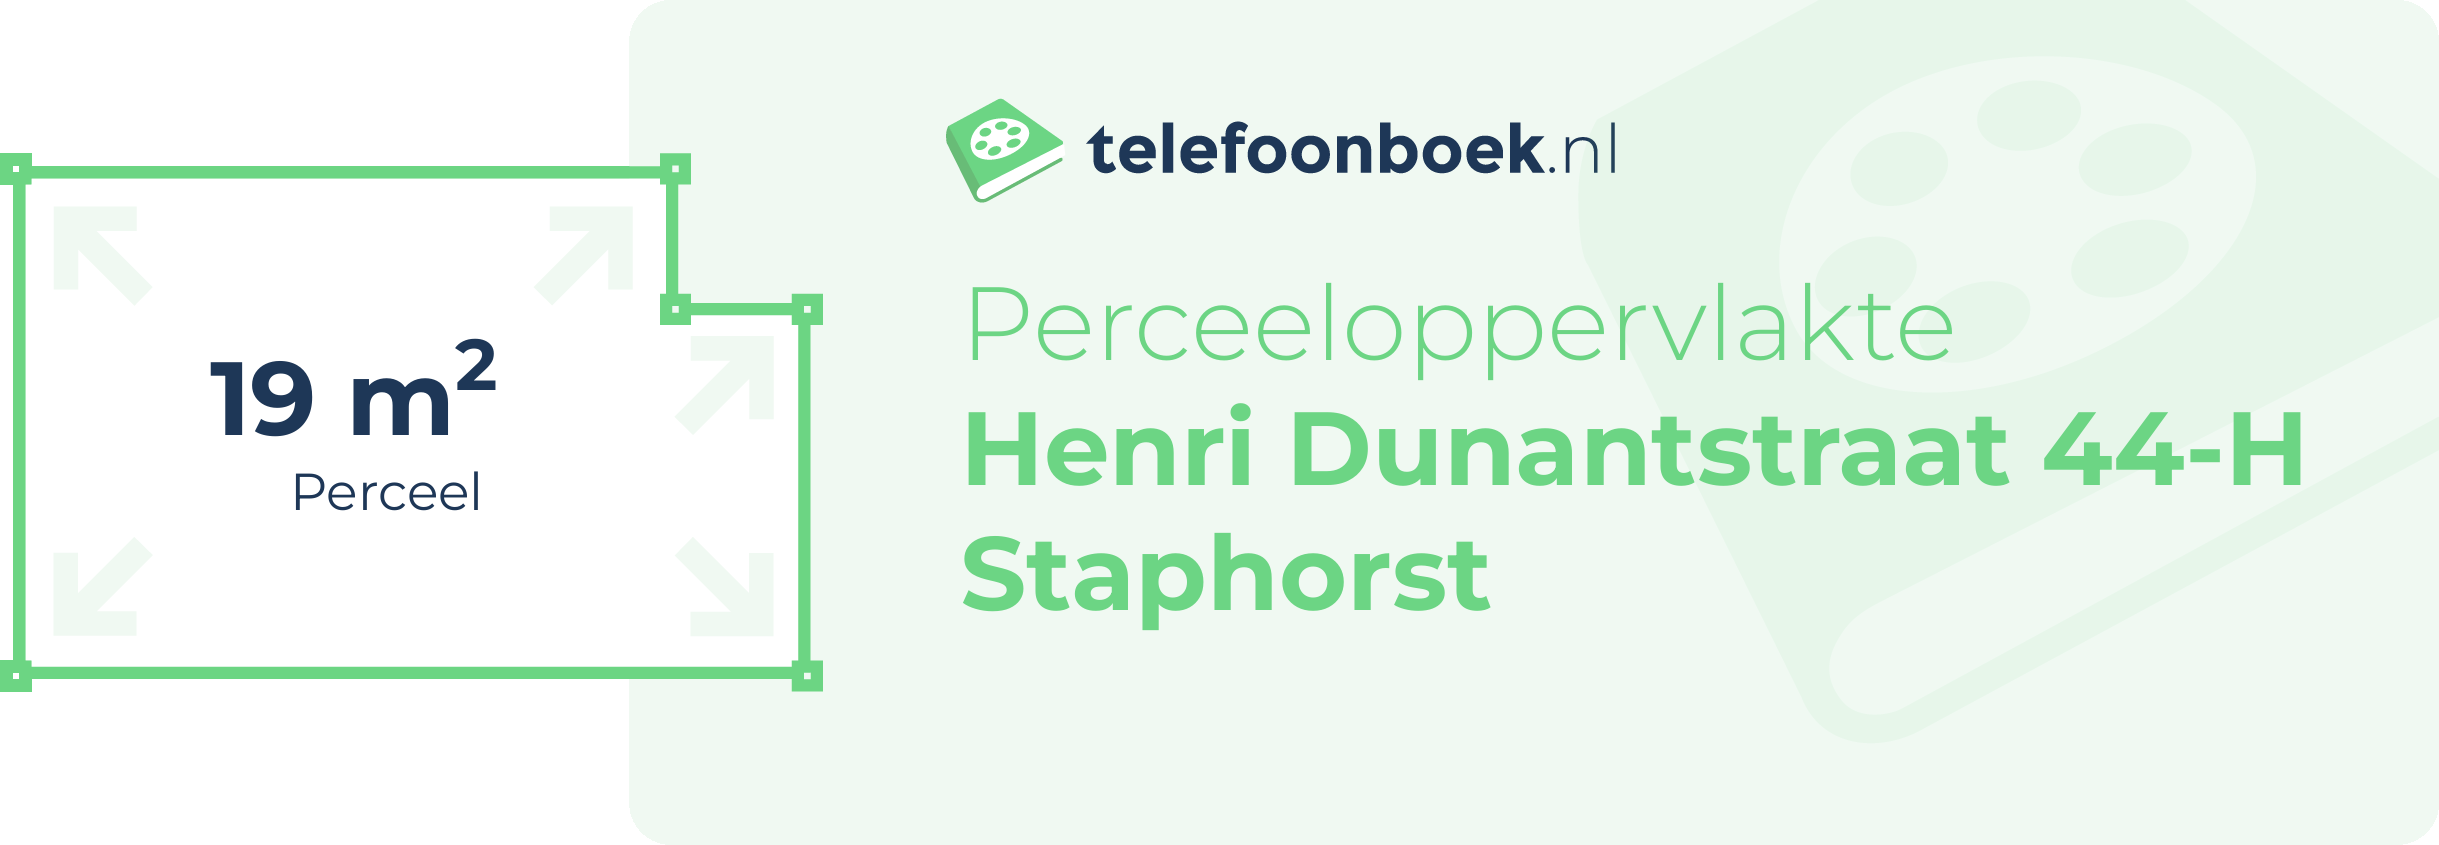 Perceeloppervlakte Henri Dunantstraat 44-H Staphorst